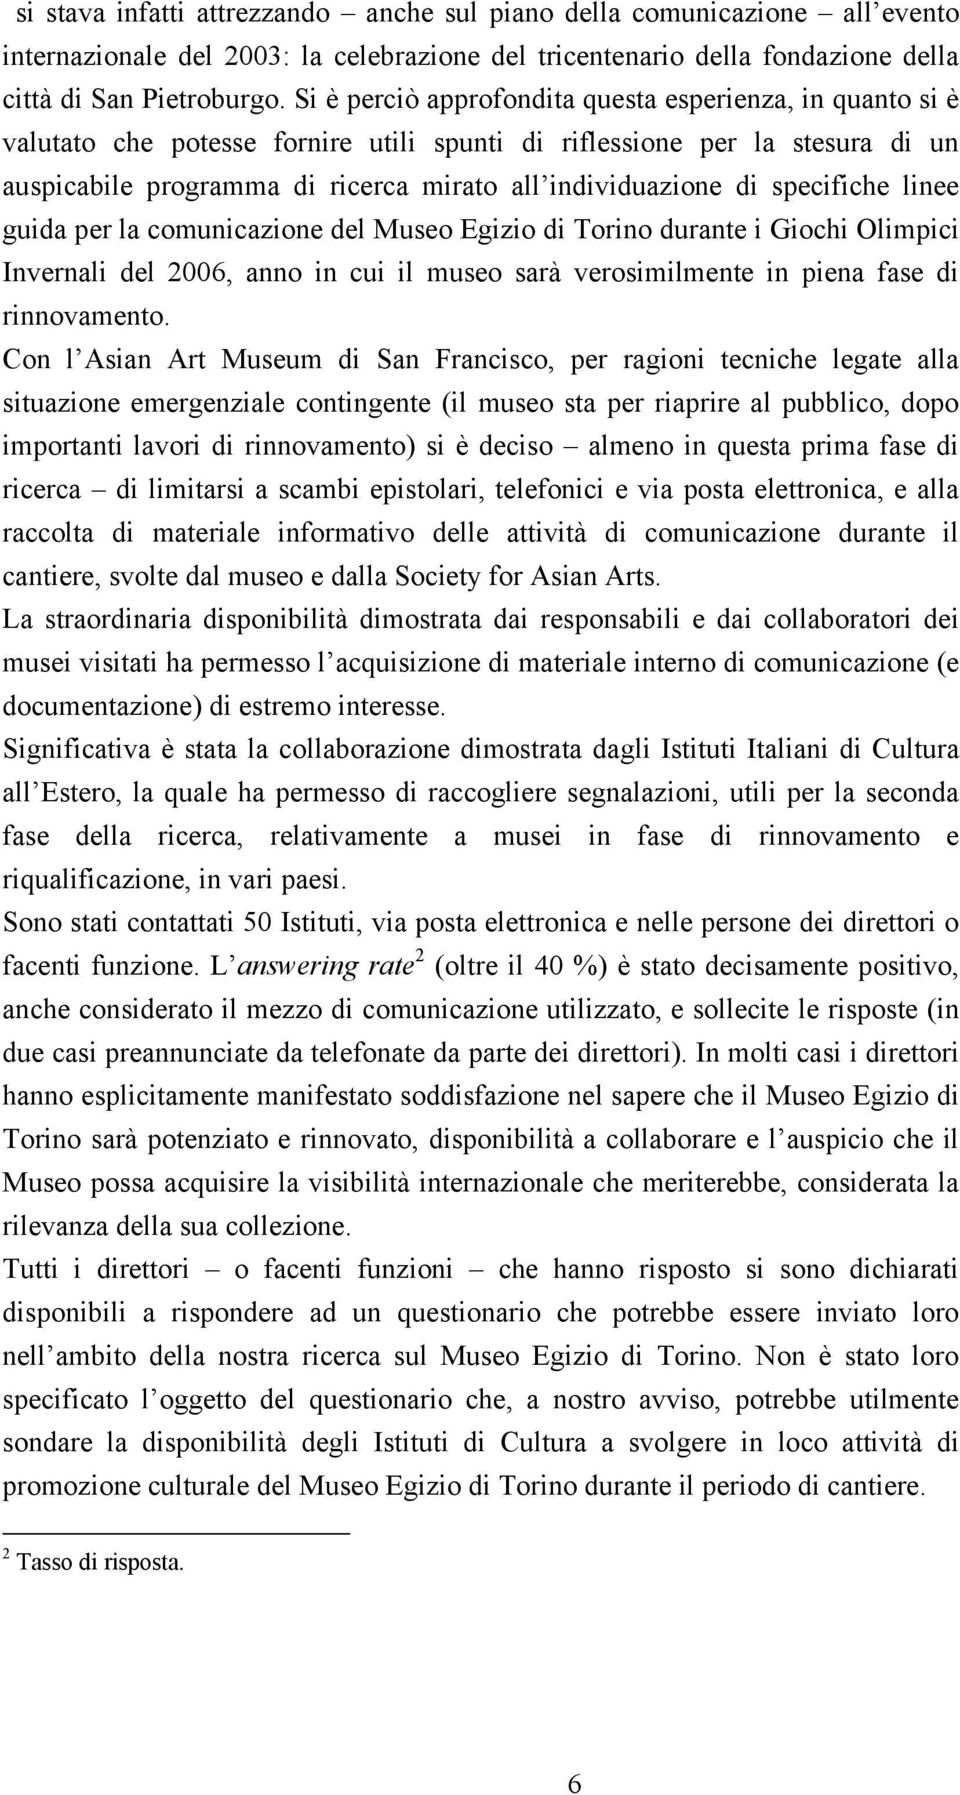 specifiche linee guida per la comunicazione del Museo Egizio di Torino durante i Giochi Olimpici Invernali del 2006, anno in cui il museo sarà verosimilmente in piena fase di rinnovamento.